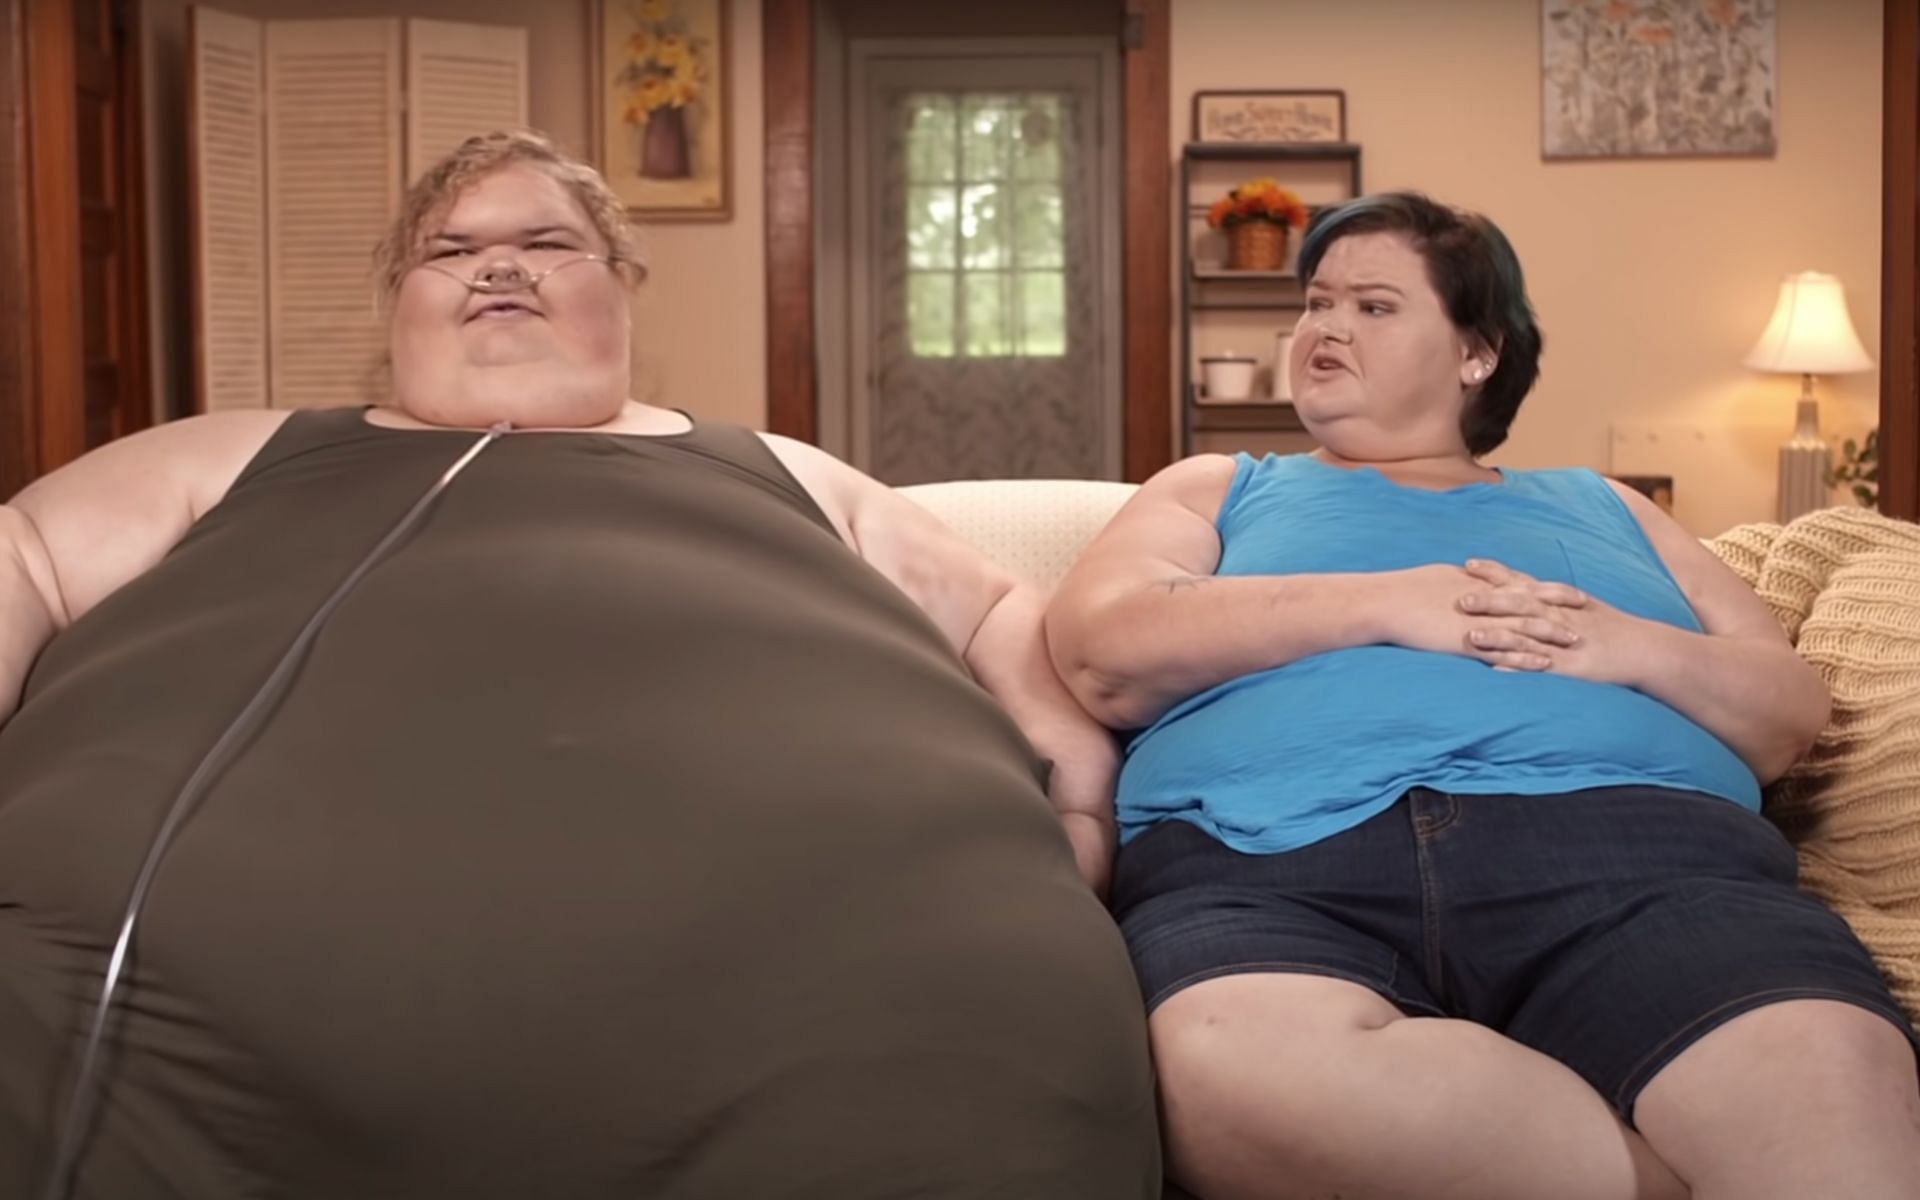 &#039;1000 lb Sisters&#039; Season 3 premieres on TLC (Image via YouTube)